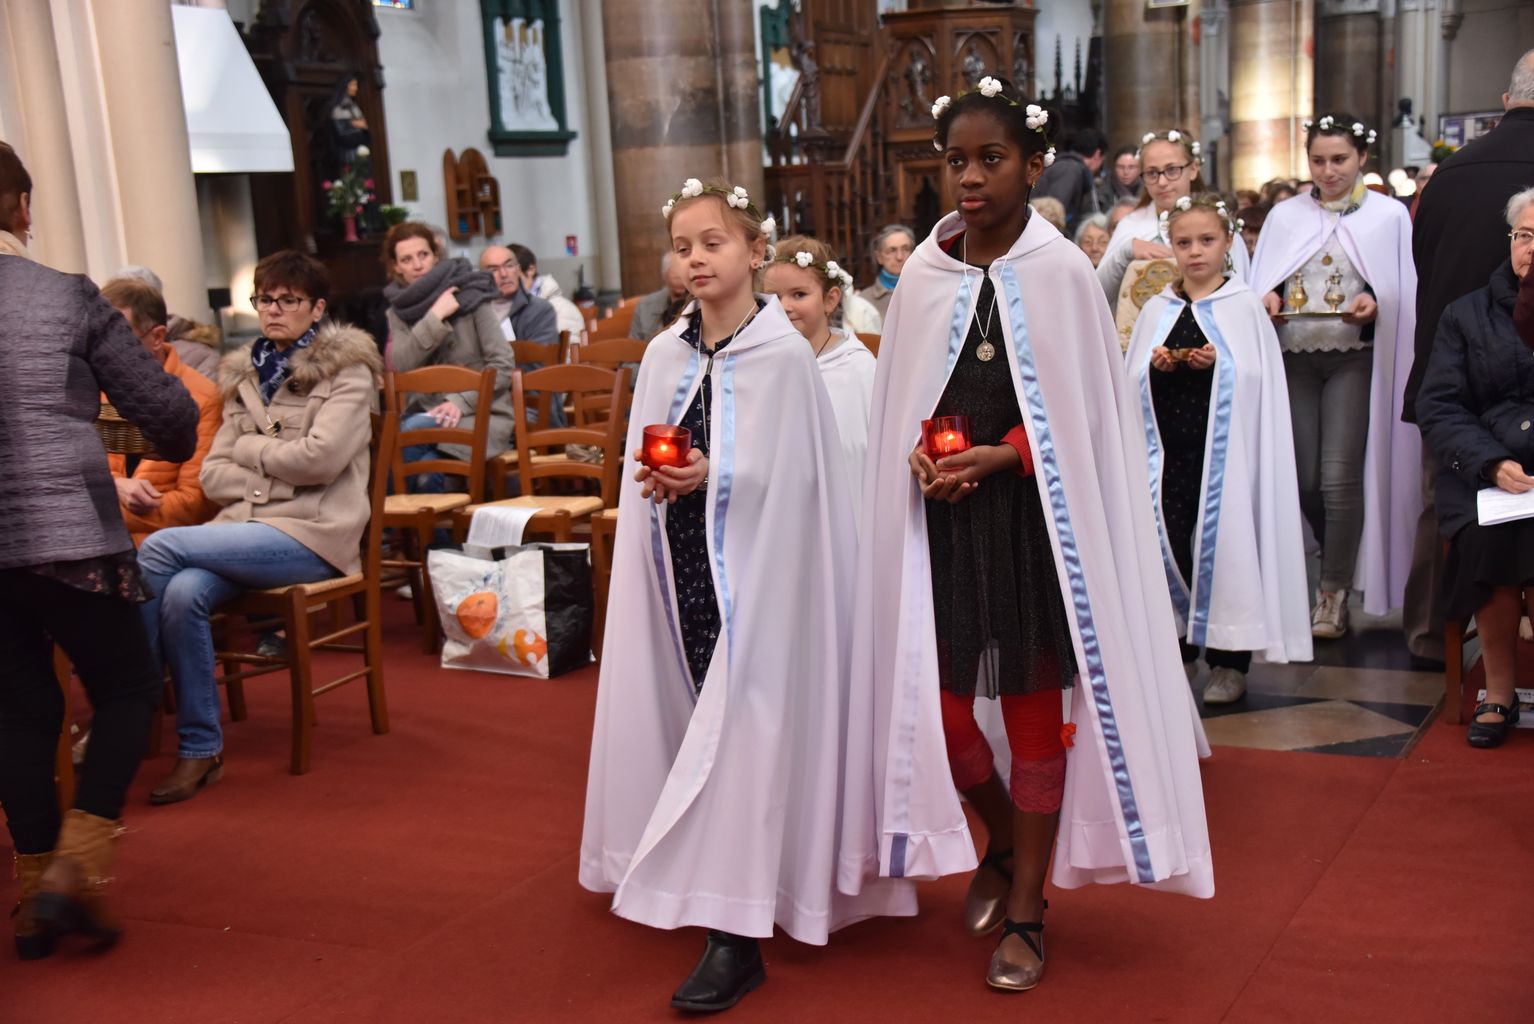 Messe de la Toussaint 2017 à St Pierre, Calais